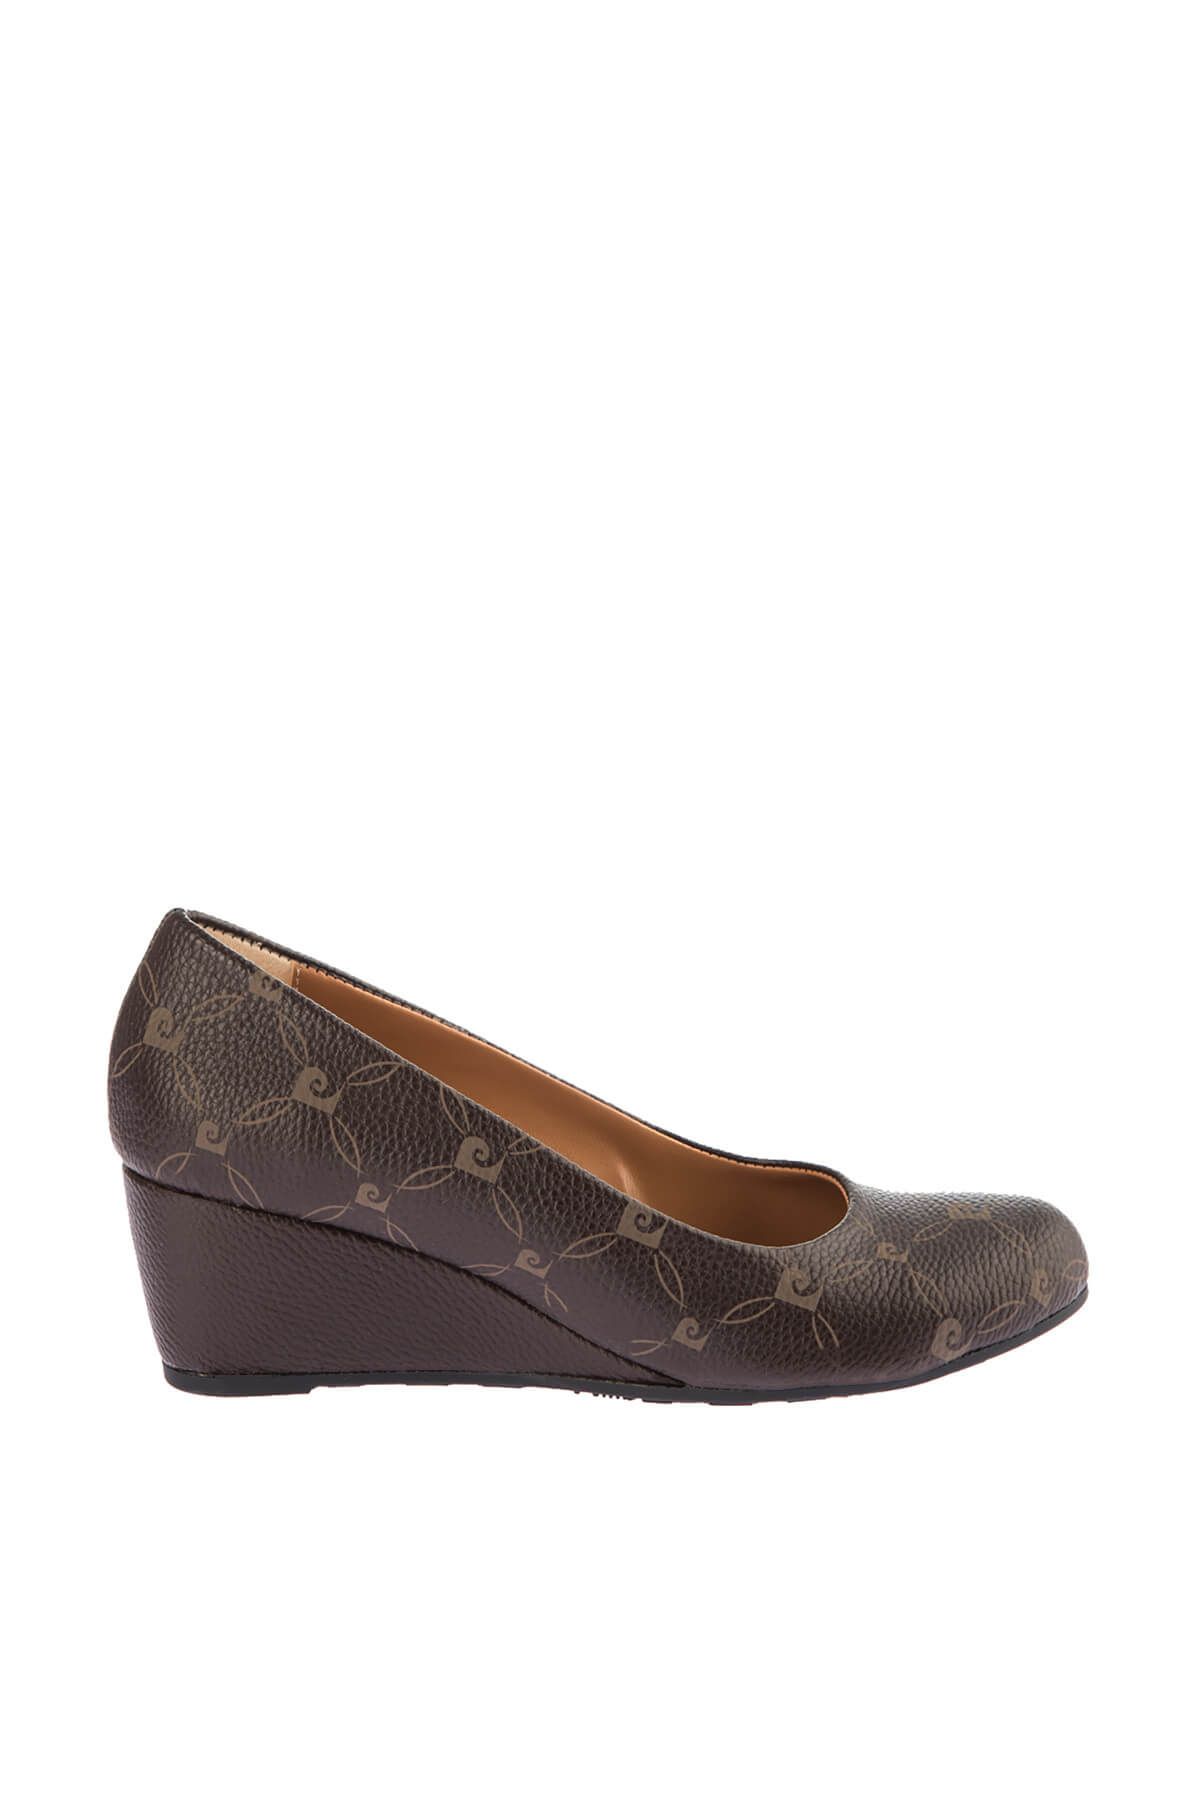 Pierre Cardin Kahverengi Kadın Dolgu Topuklu Ayakkabı DSMAW19618